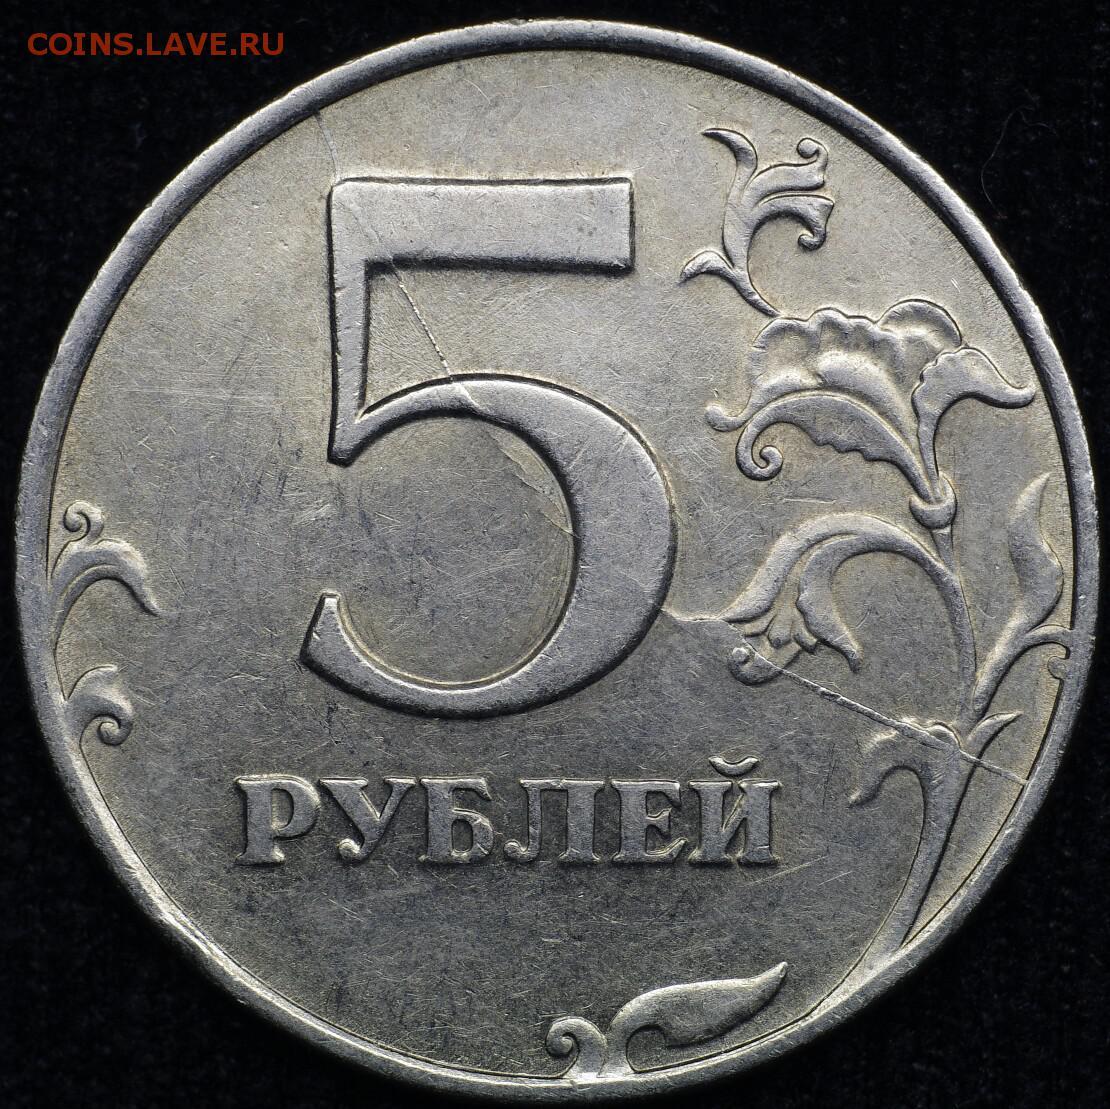 Обойдется в 5 рублей 10. 5 Рублей 1997 СПМД. Реверс 5 рублей 1997. 5 Рублей 1997 г. СПМД. Редкие 5 рублей 1997 года СПМД.